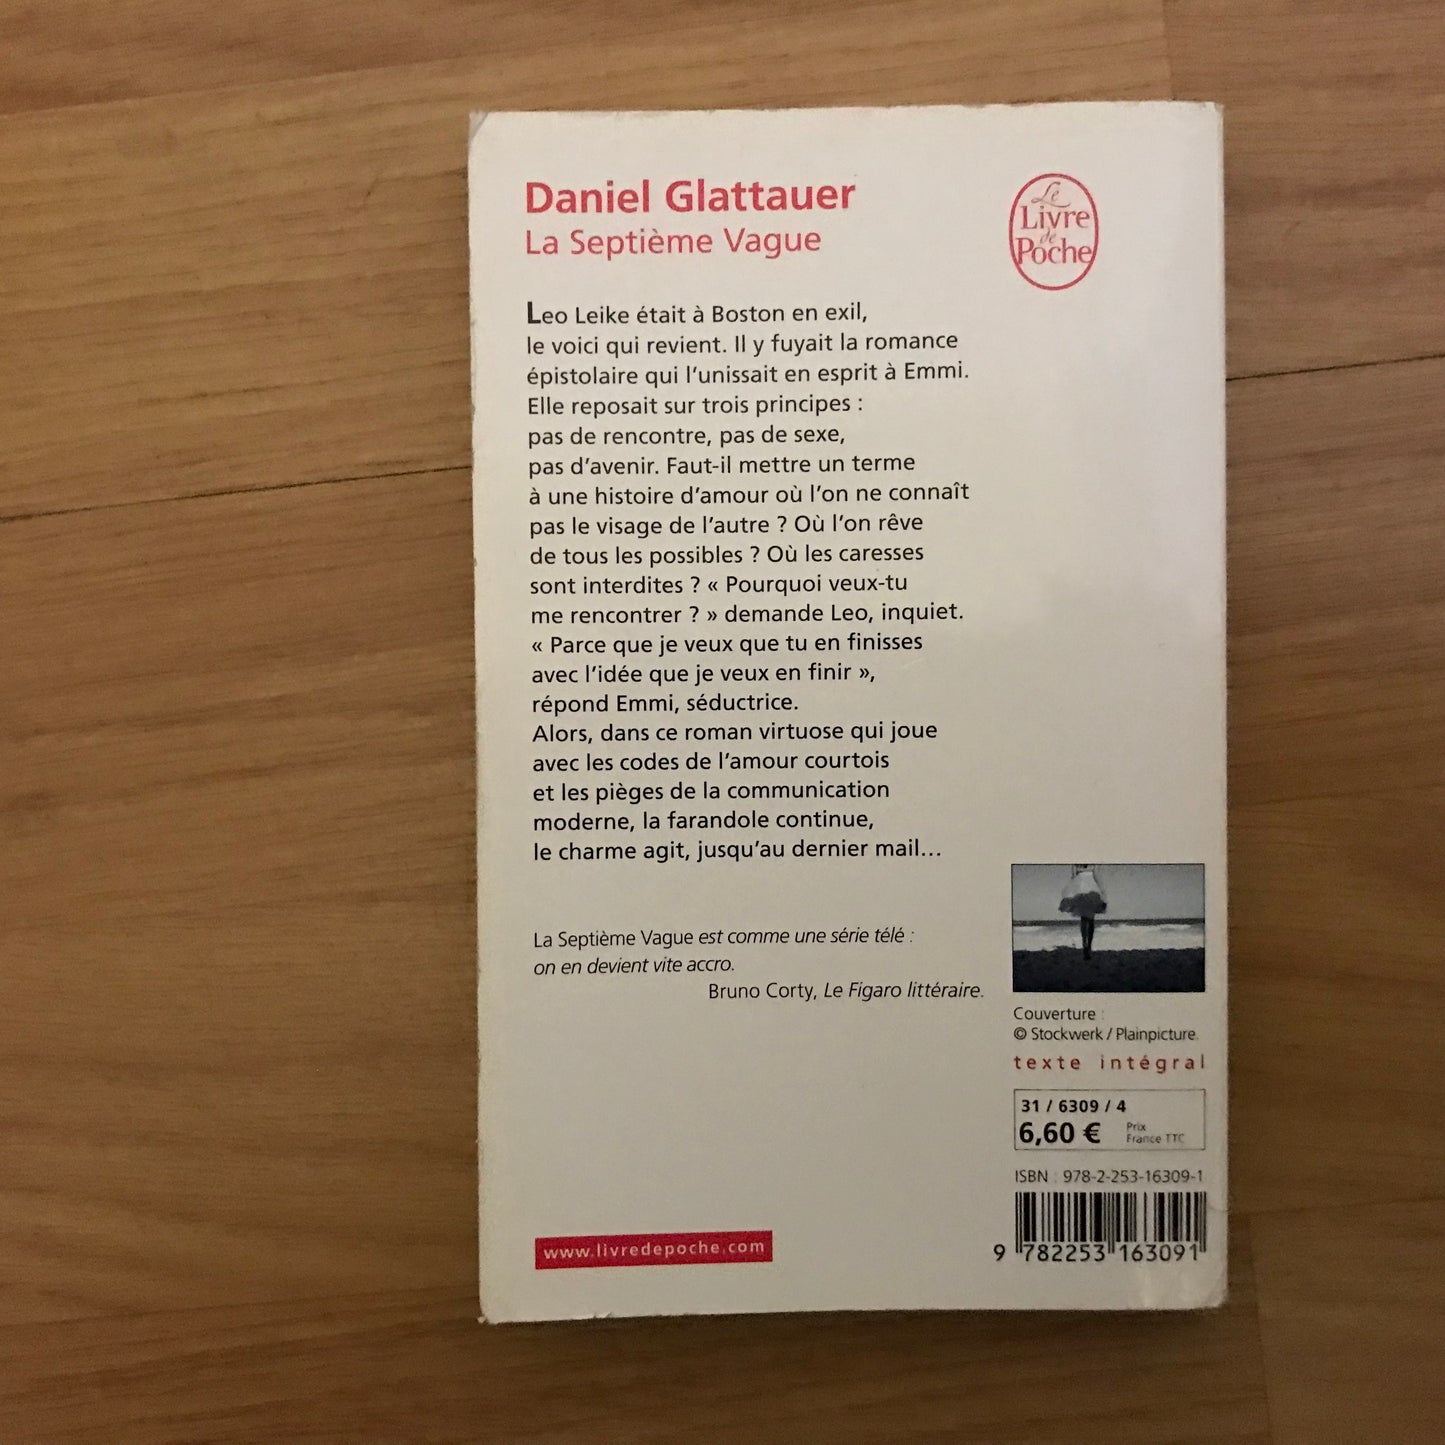 Glattauer, Daniel - La septième vague